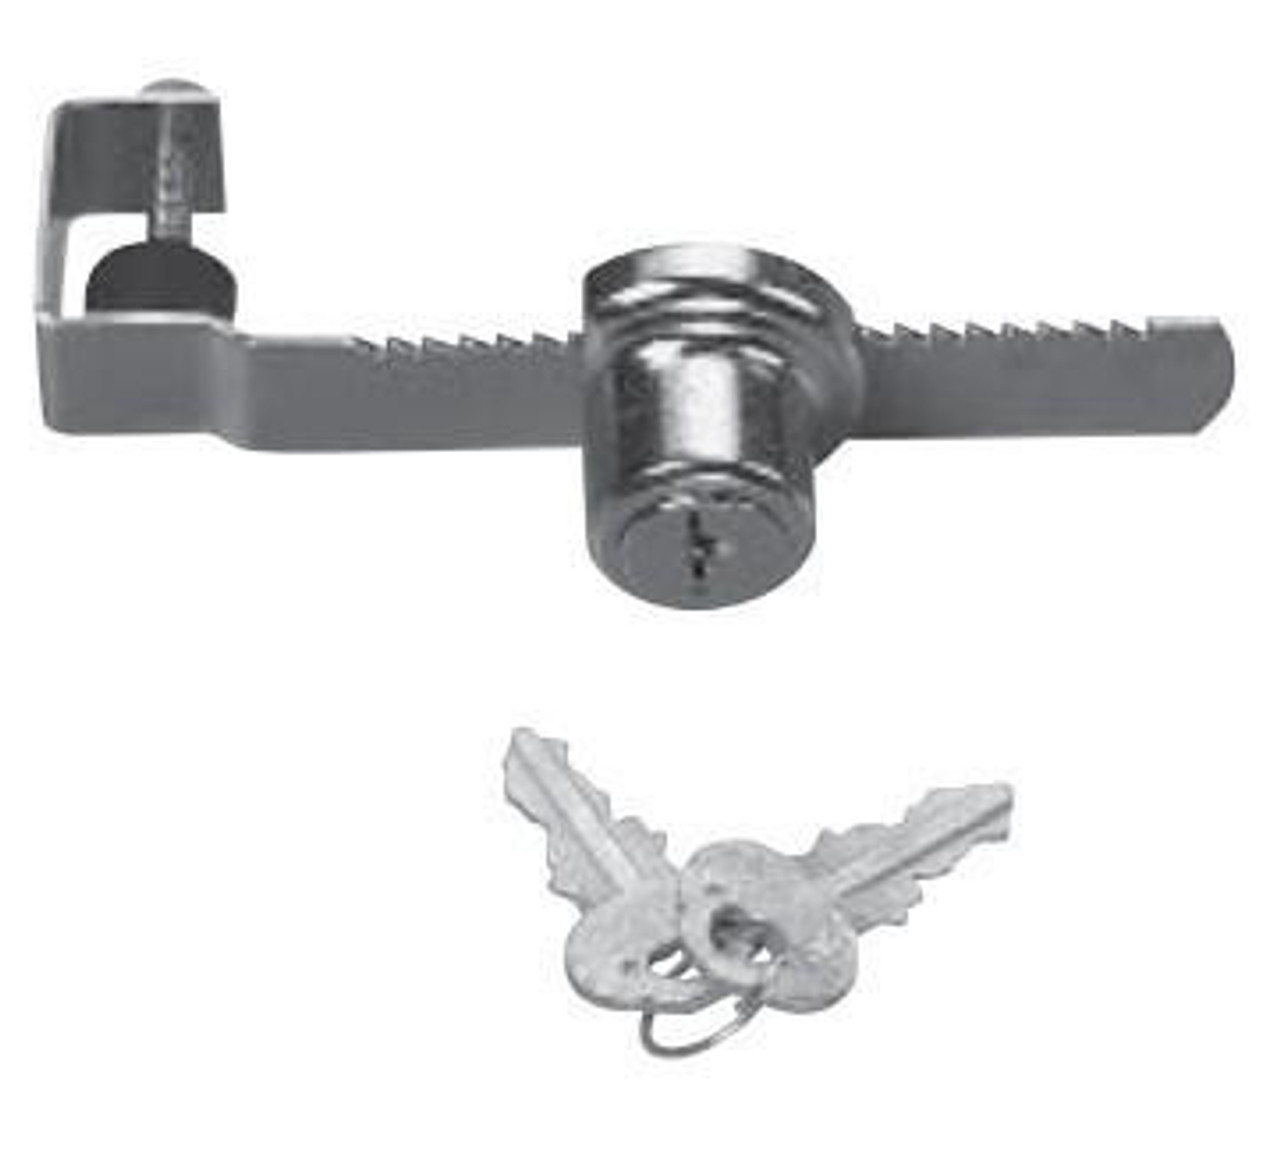  Knape & Vogt 963KA 440 CHR Adjustable Ratchet Lock for 1/4" Glass or Wood Doors 